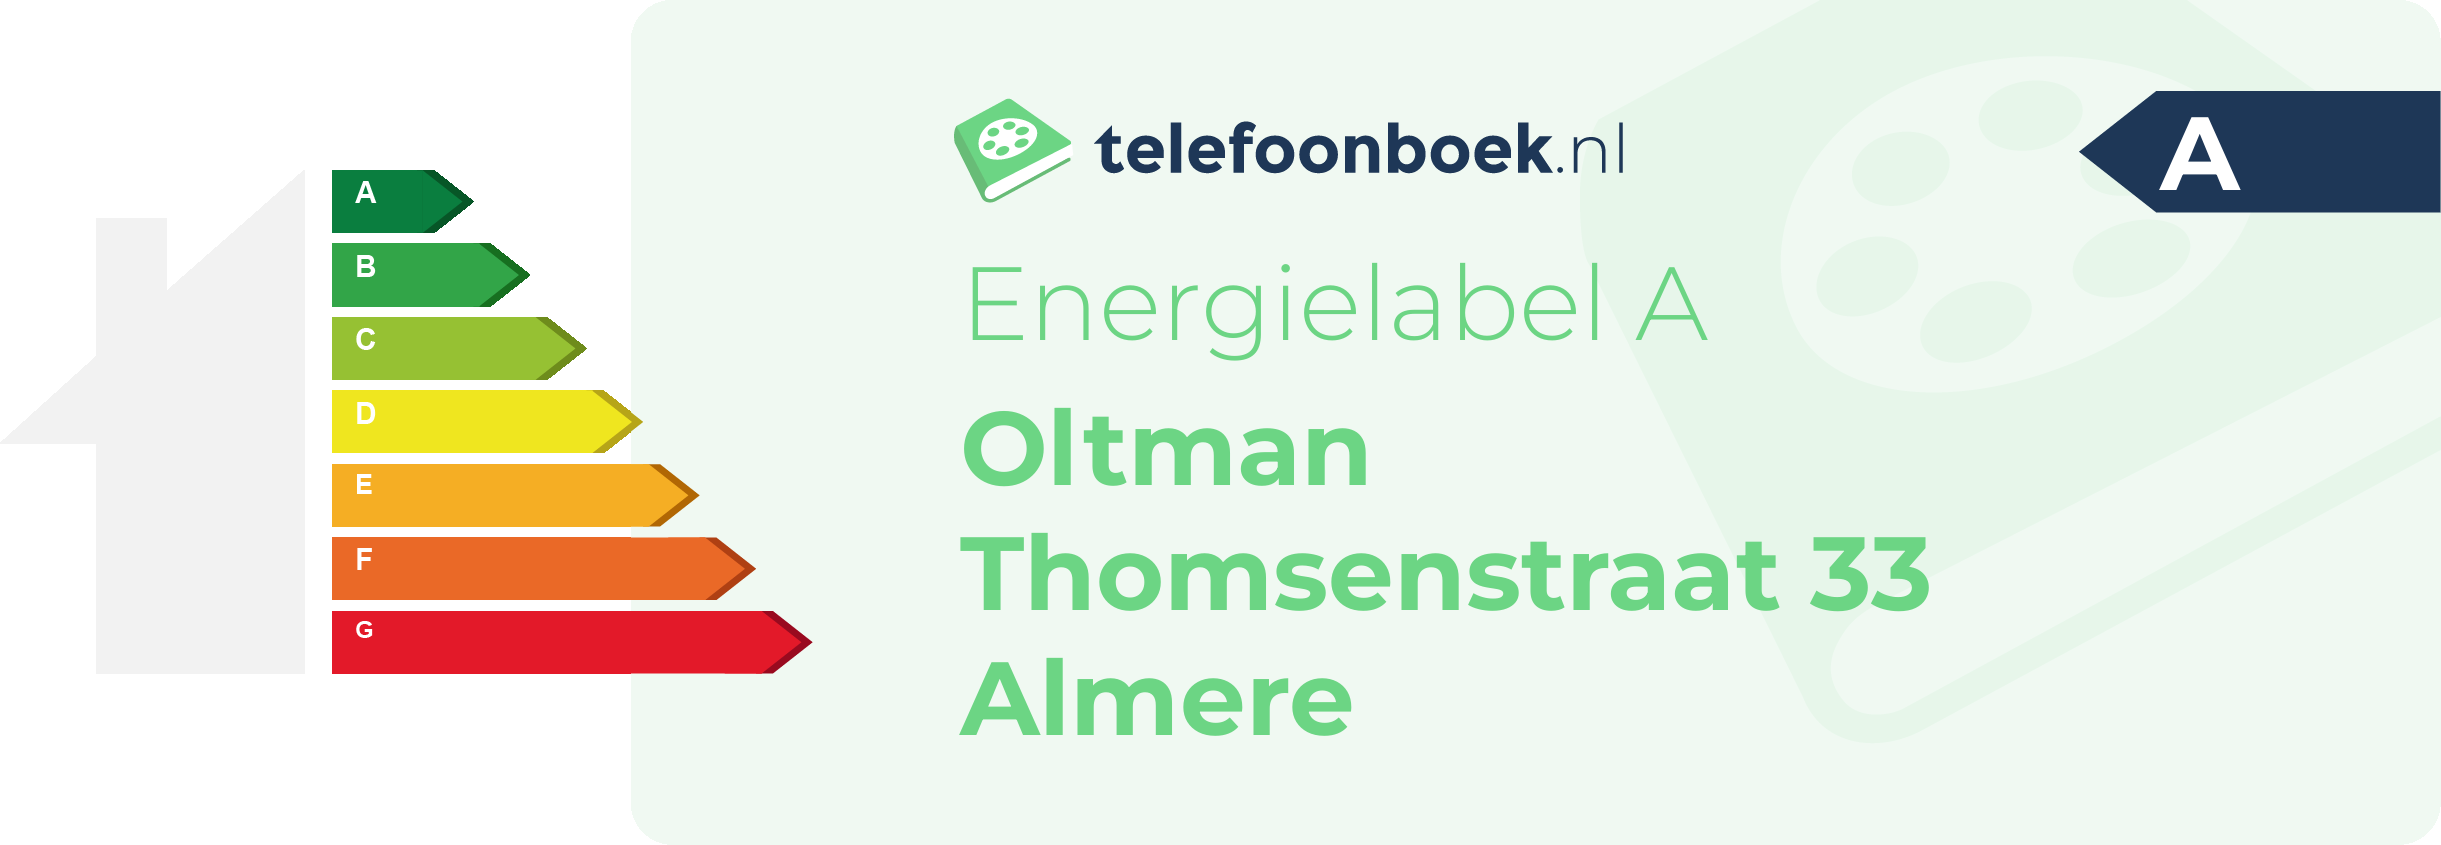 Energielabel Oltman Thomsenstraat 33 Almere